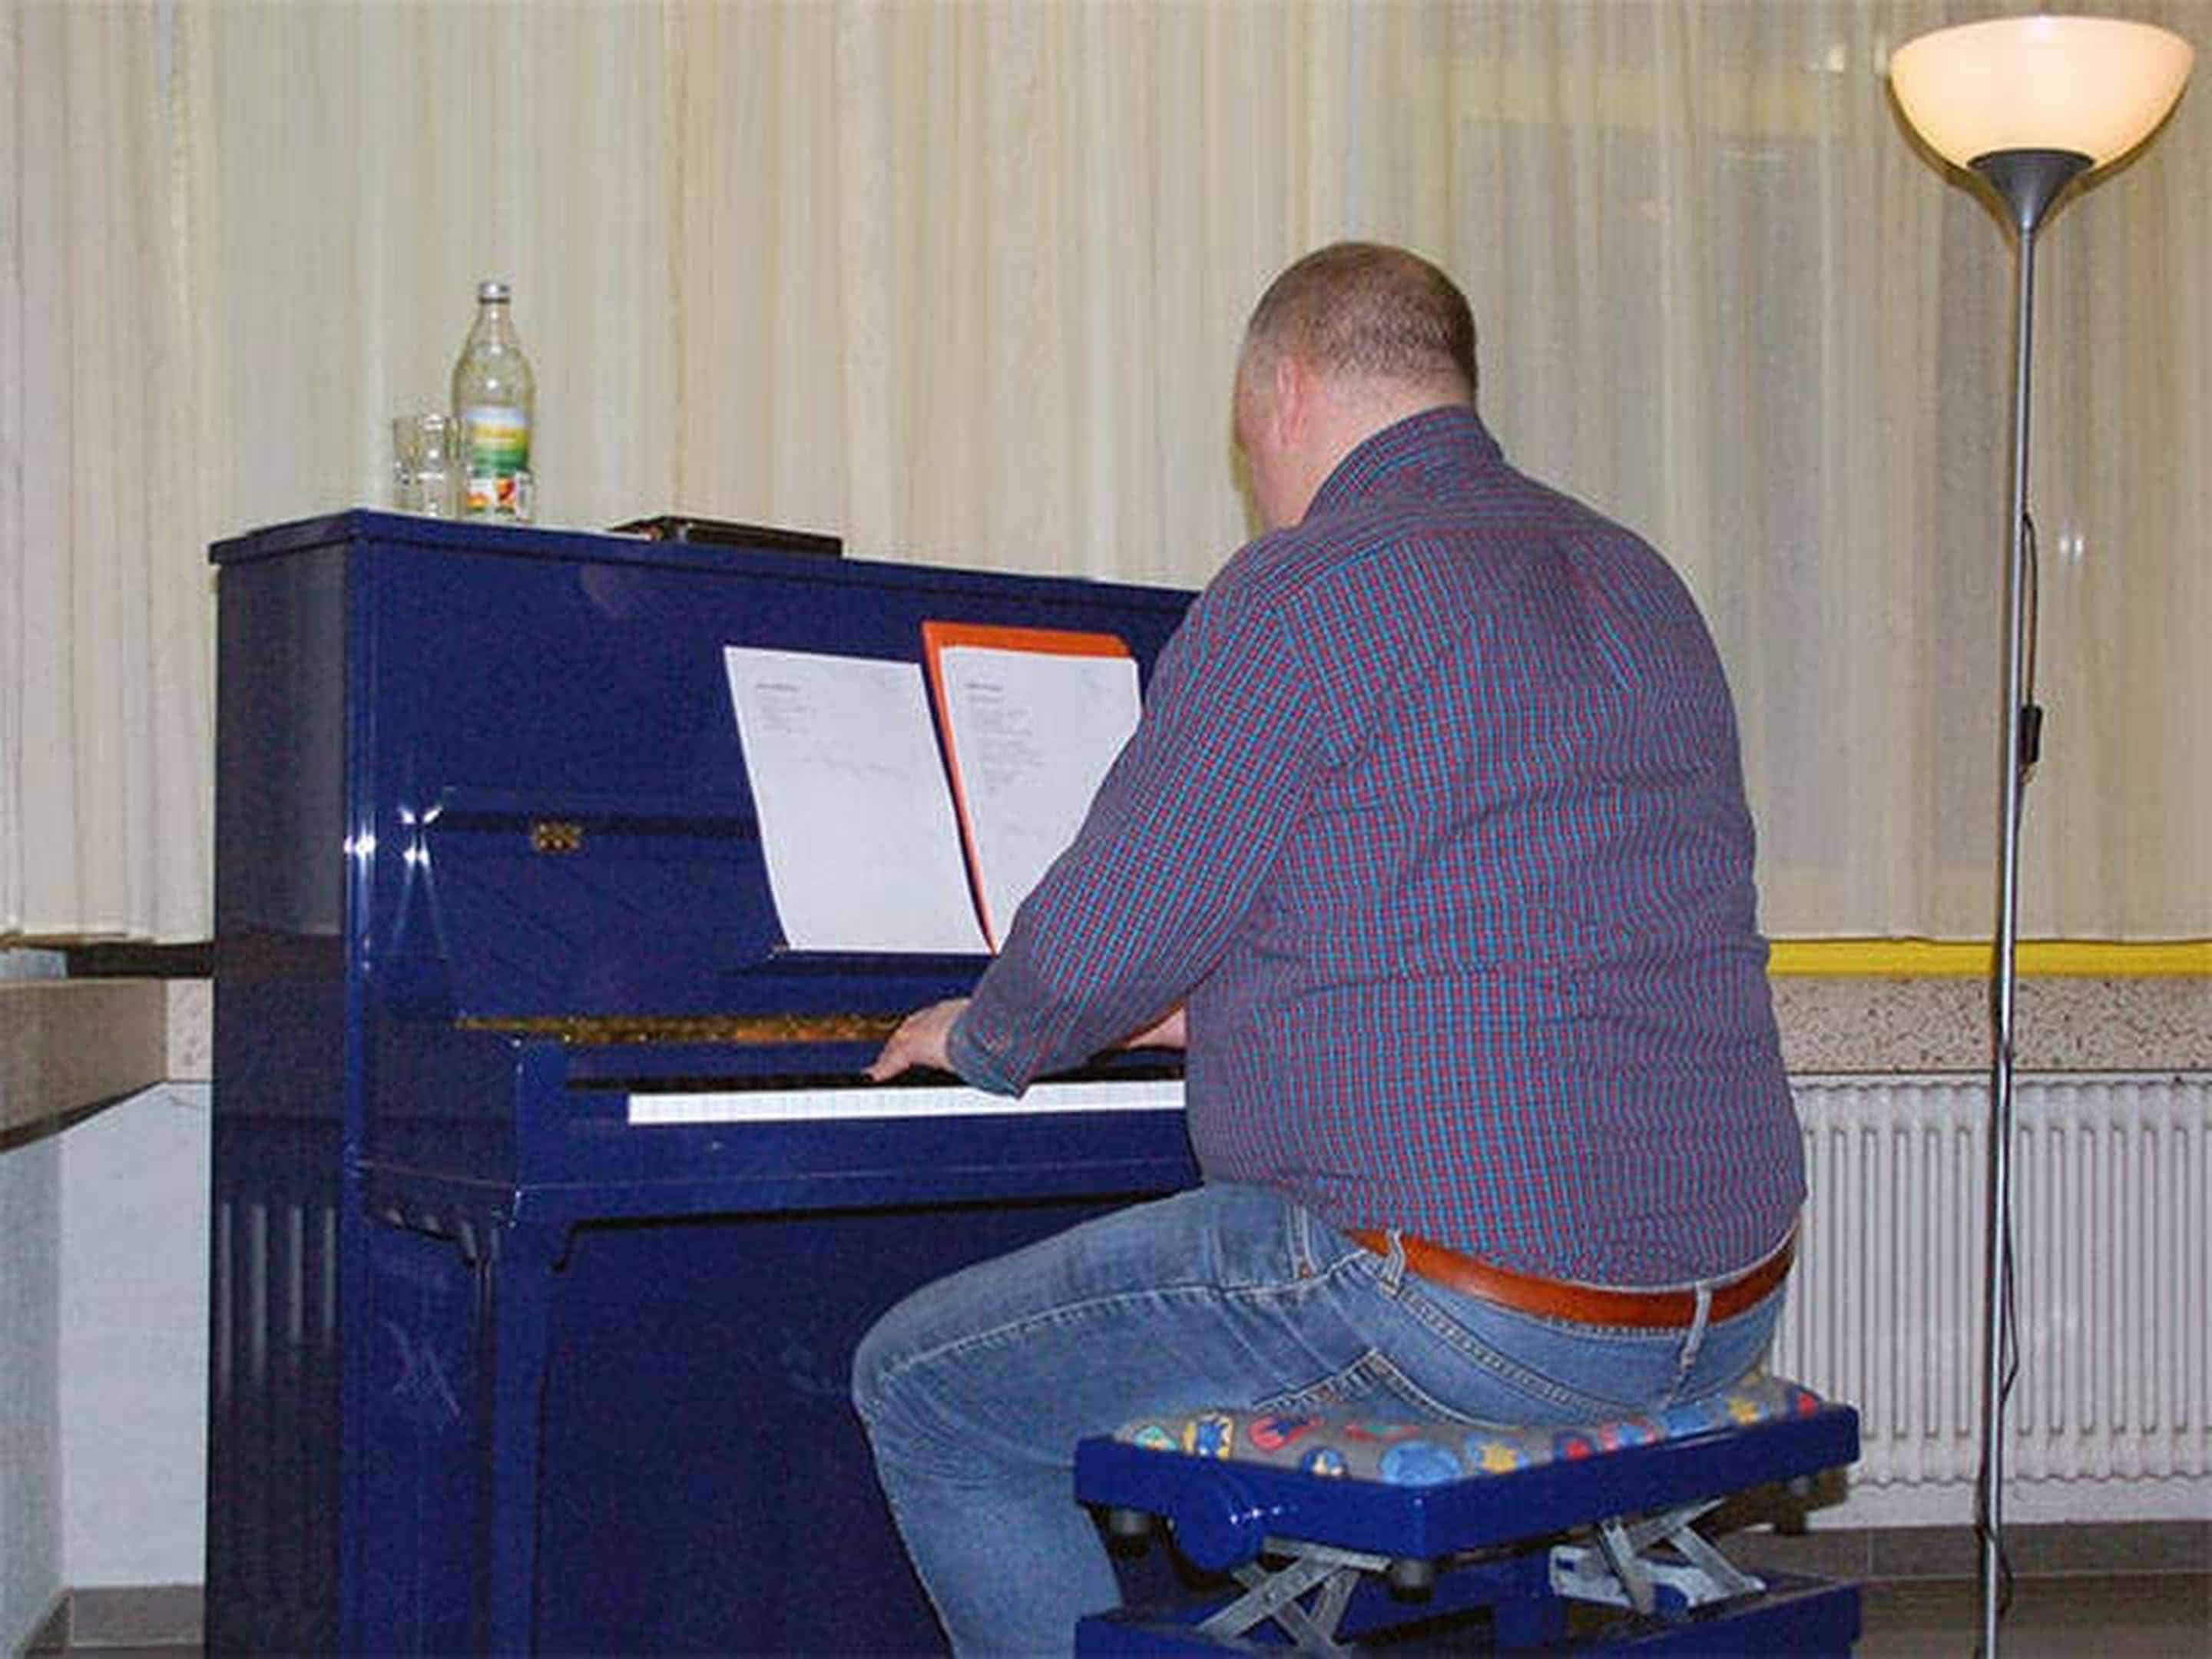 Foto: Hier seht ihr Stefan am Klavier bei seinen Zwischenspielen zwischen den einzelnen Texten.